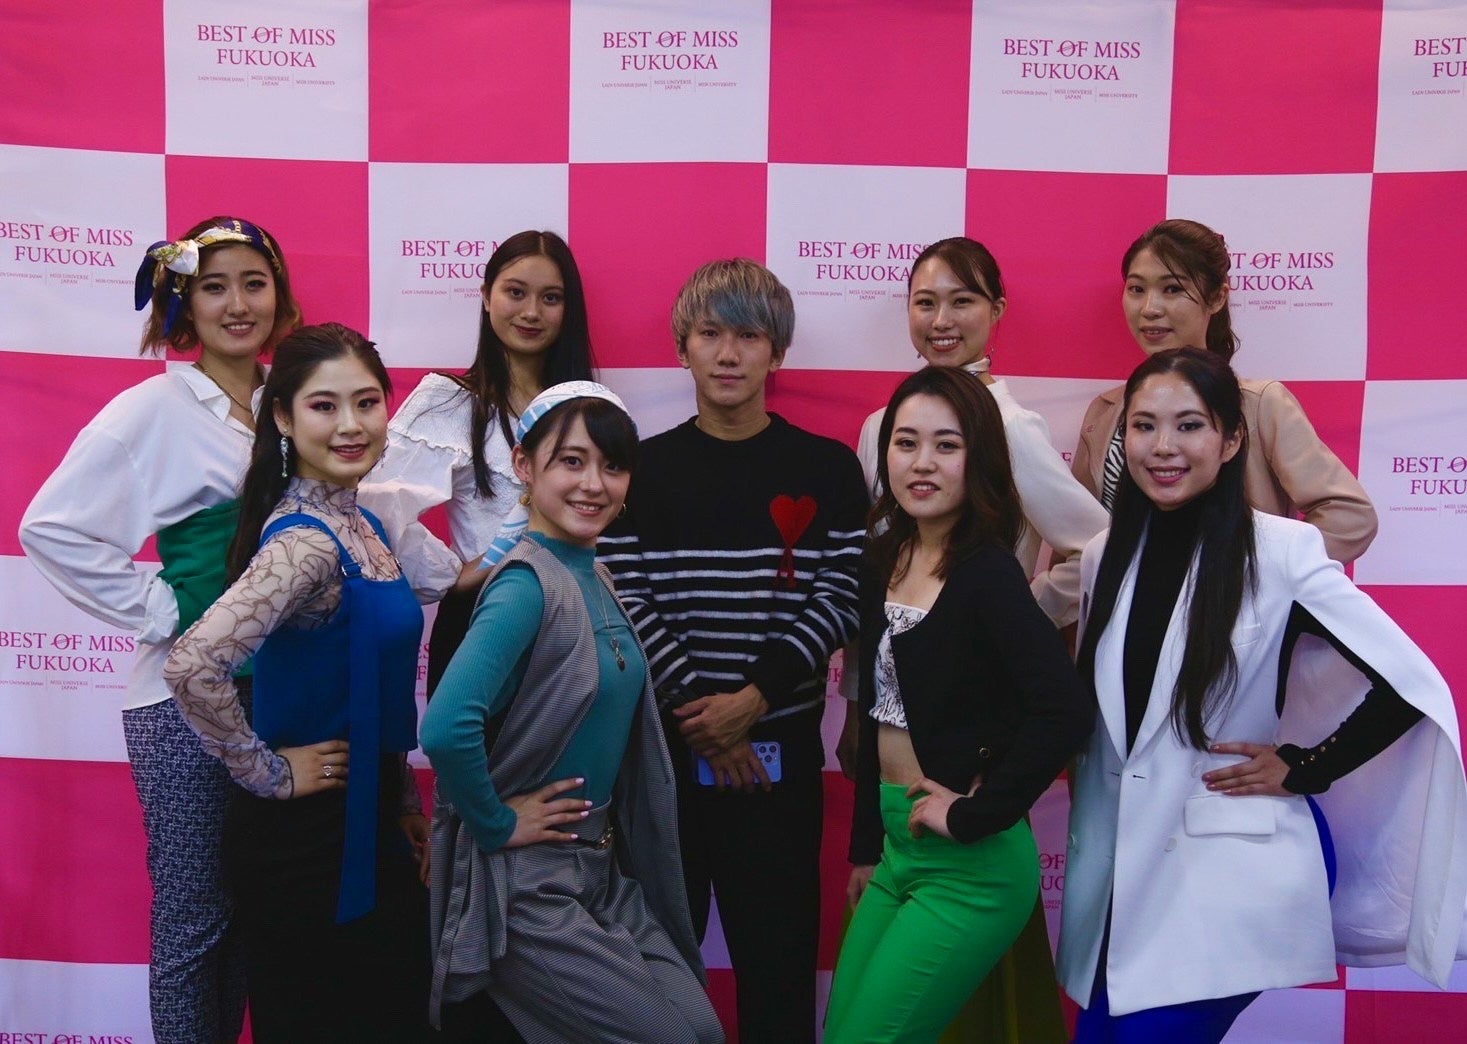 ライブハウス「渋谷gee-ge.」とAWAが、AATA、めばゑなど女性シンガーソングライター4組が出演のコラボイベント開催！